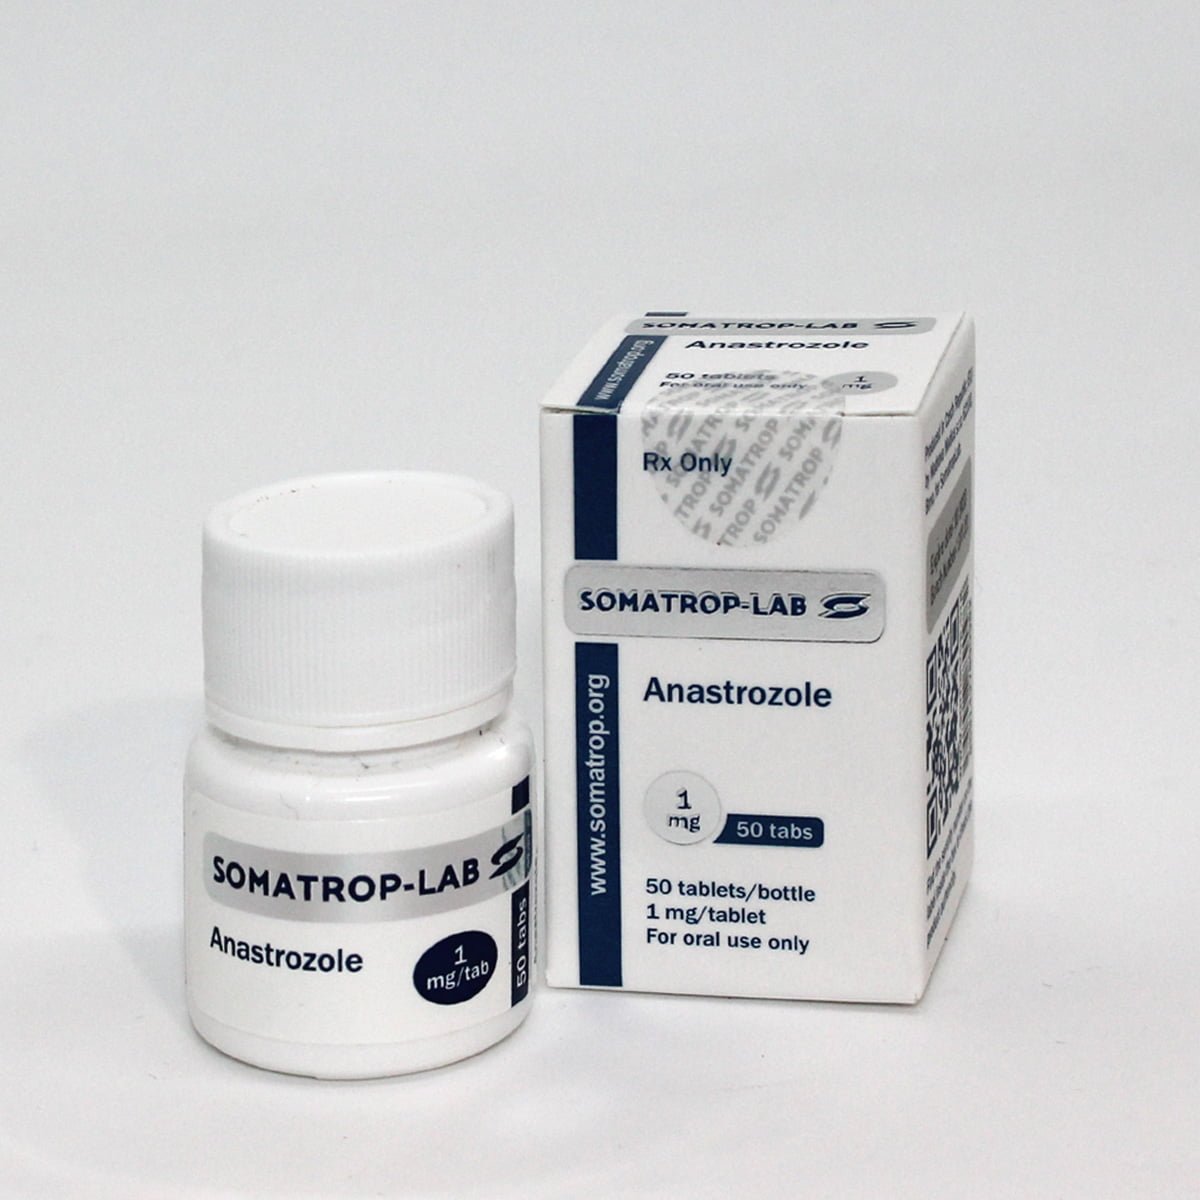 Somatrop-Lab Anastrozole